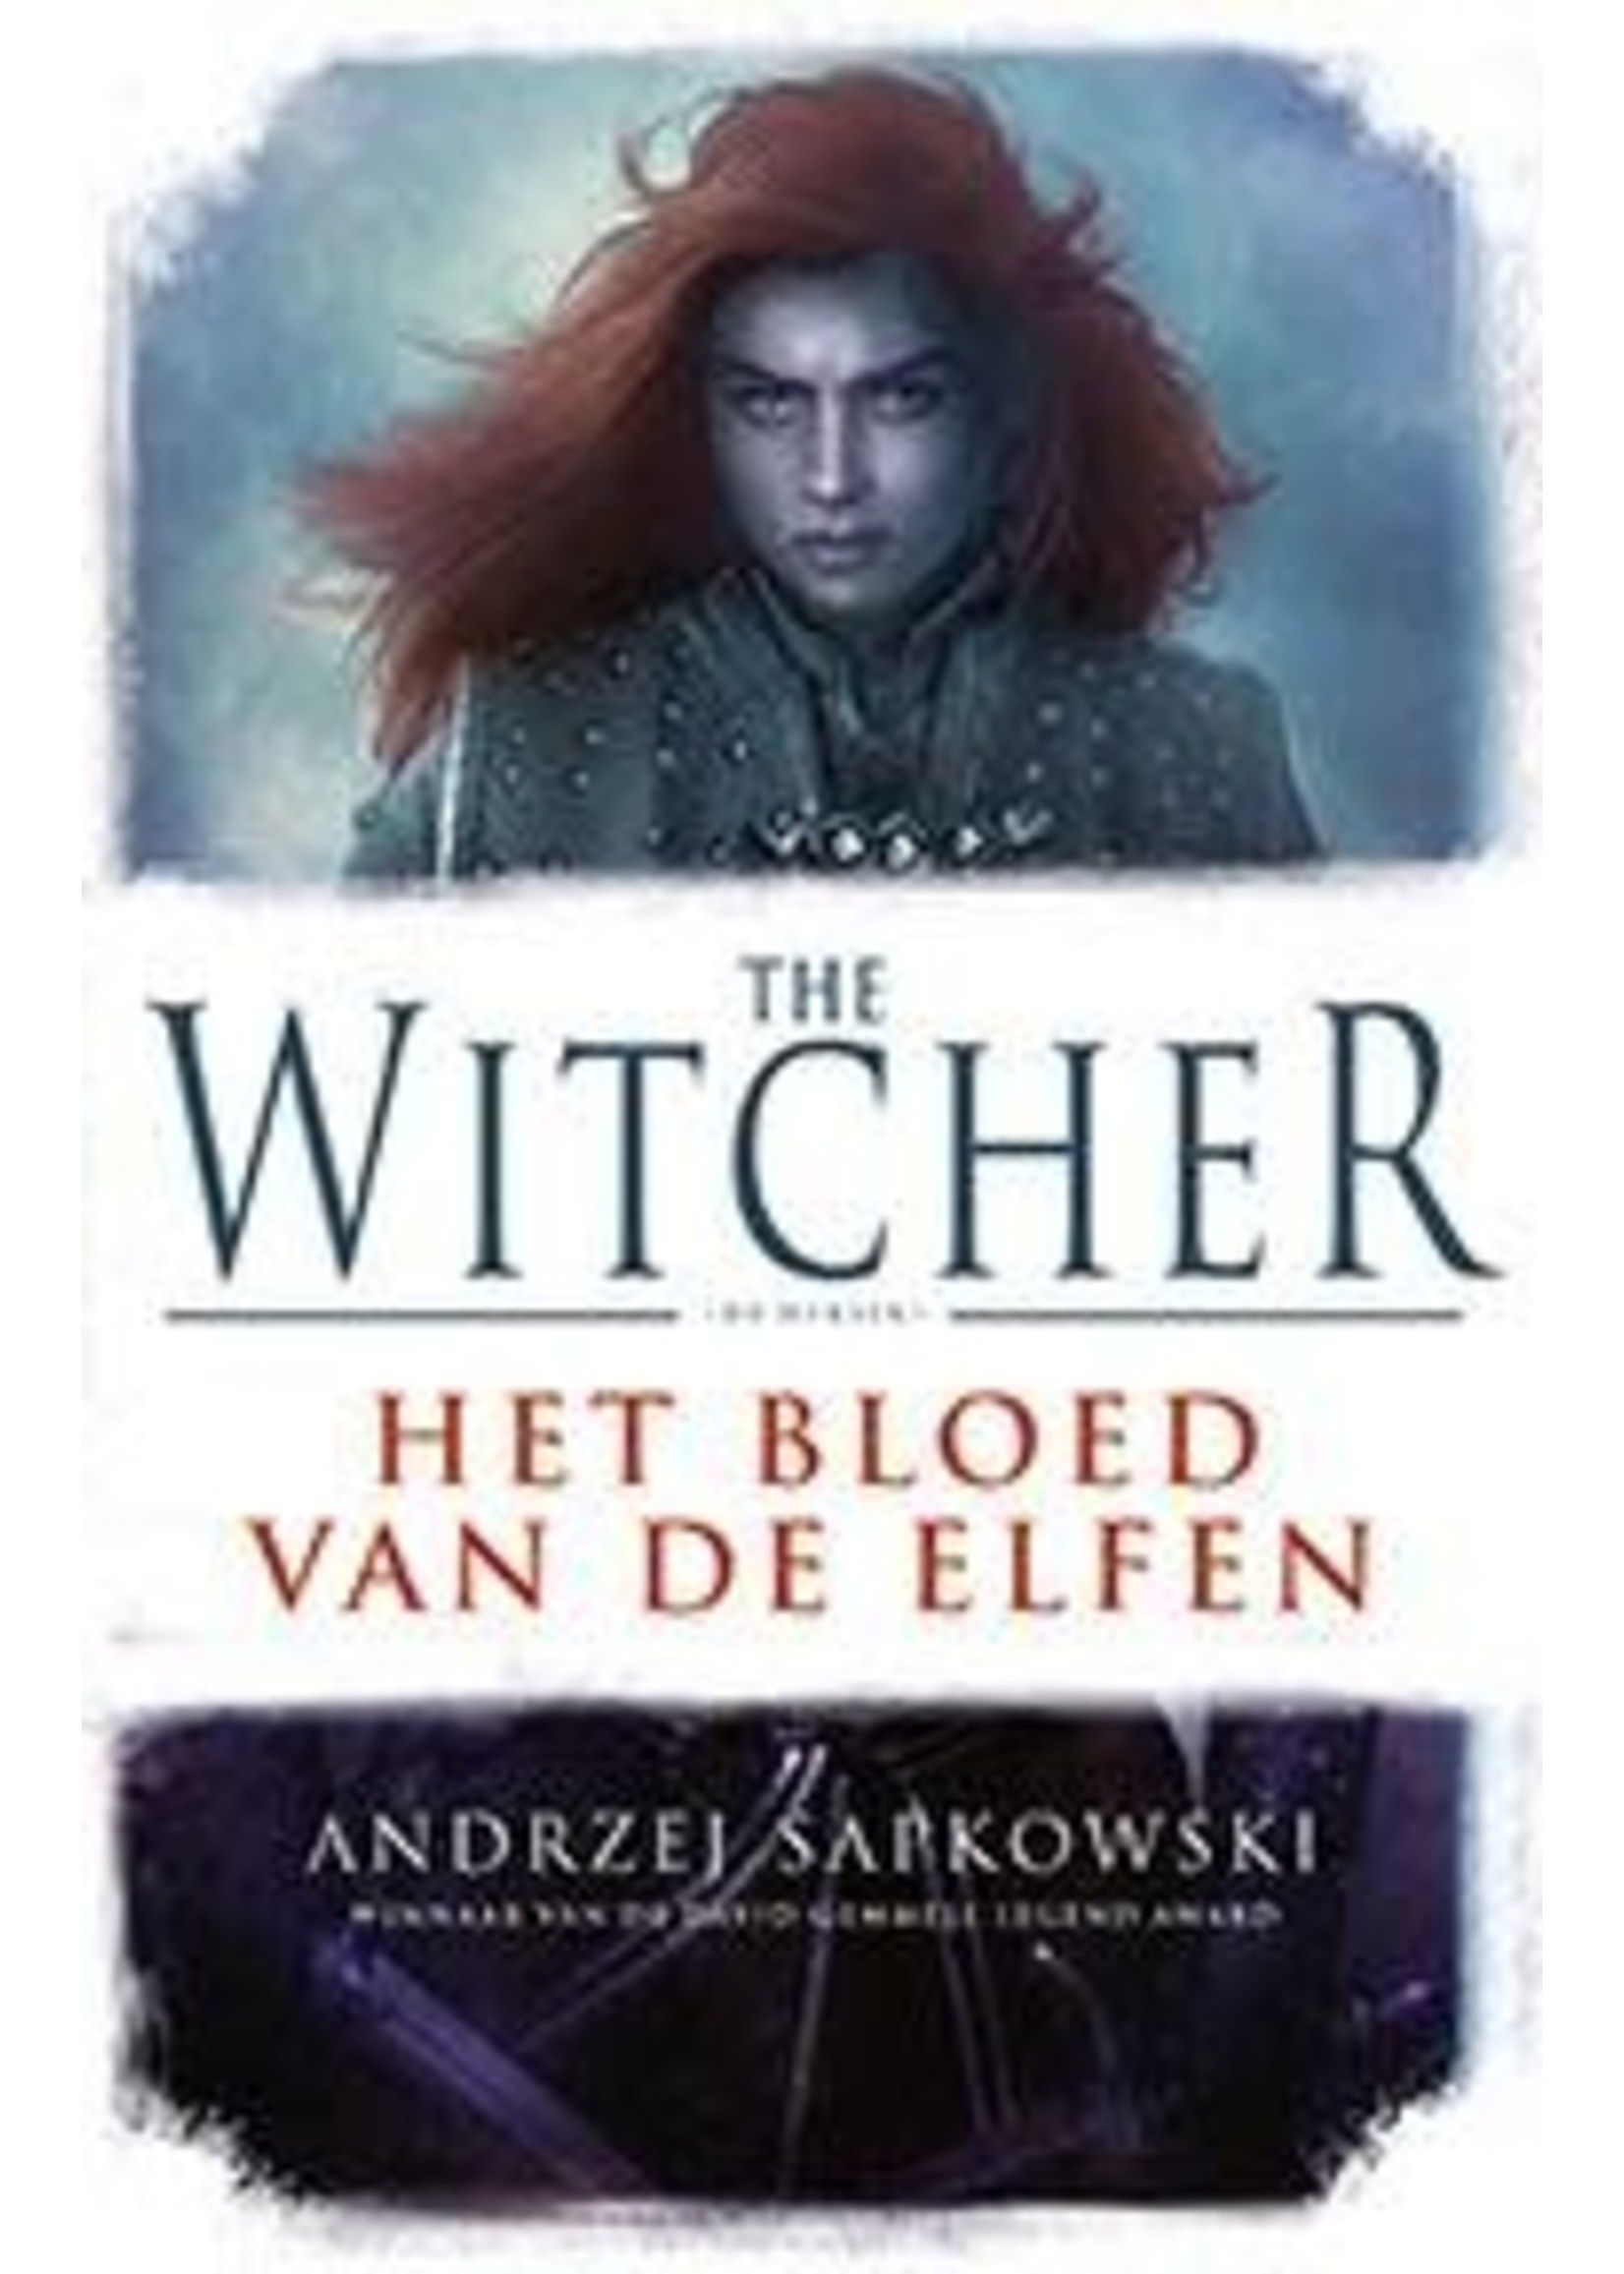 Andrzej Sapkowski Het Bloed Van De Elfen, The Witcher 3, 9789024564019, Andrzej Sapkowski, Luitingh Sijthoff, 9789024564019